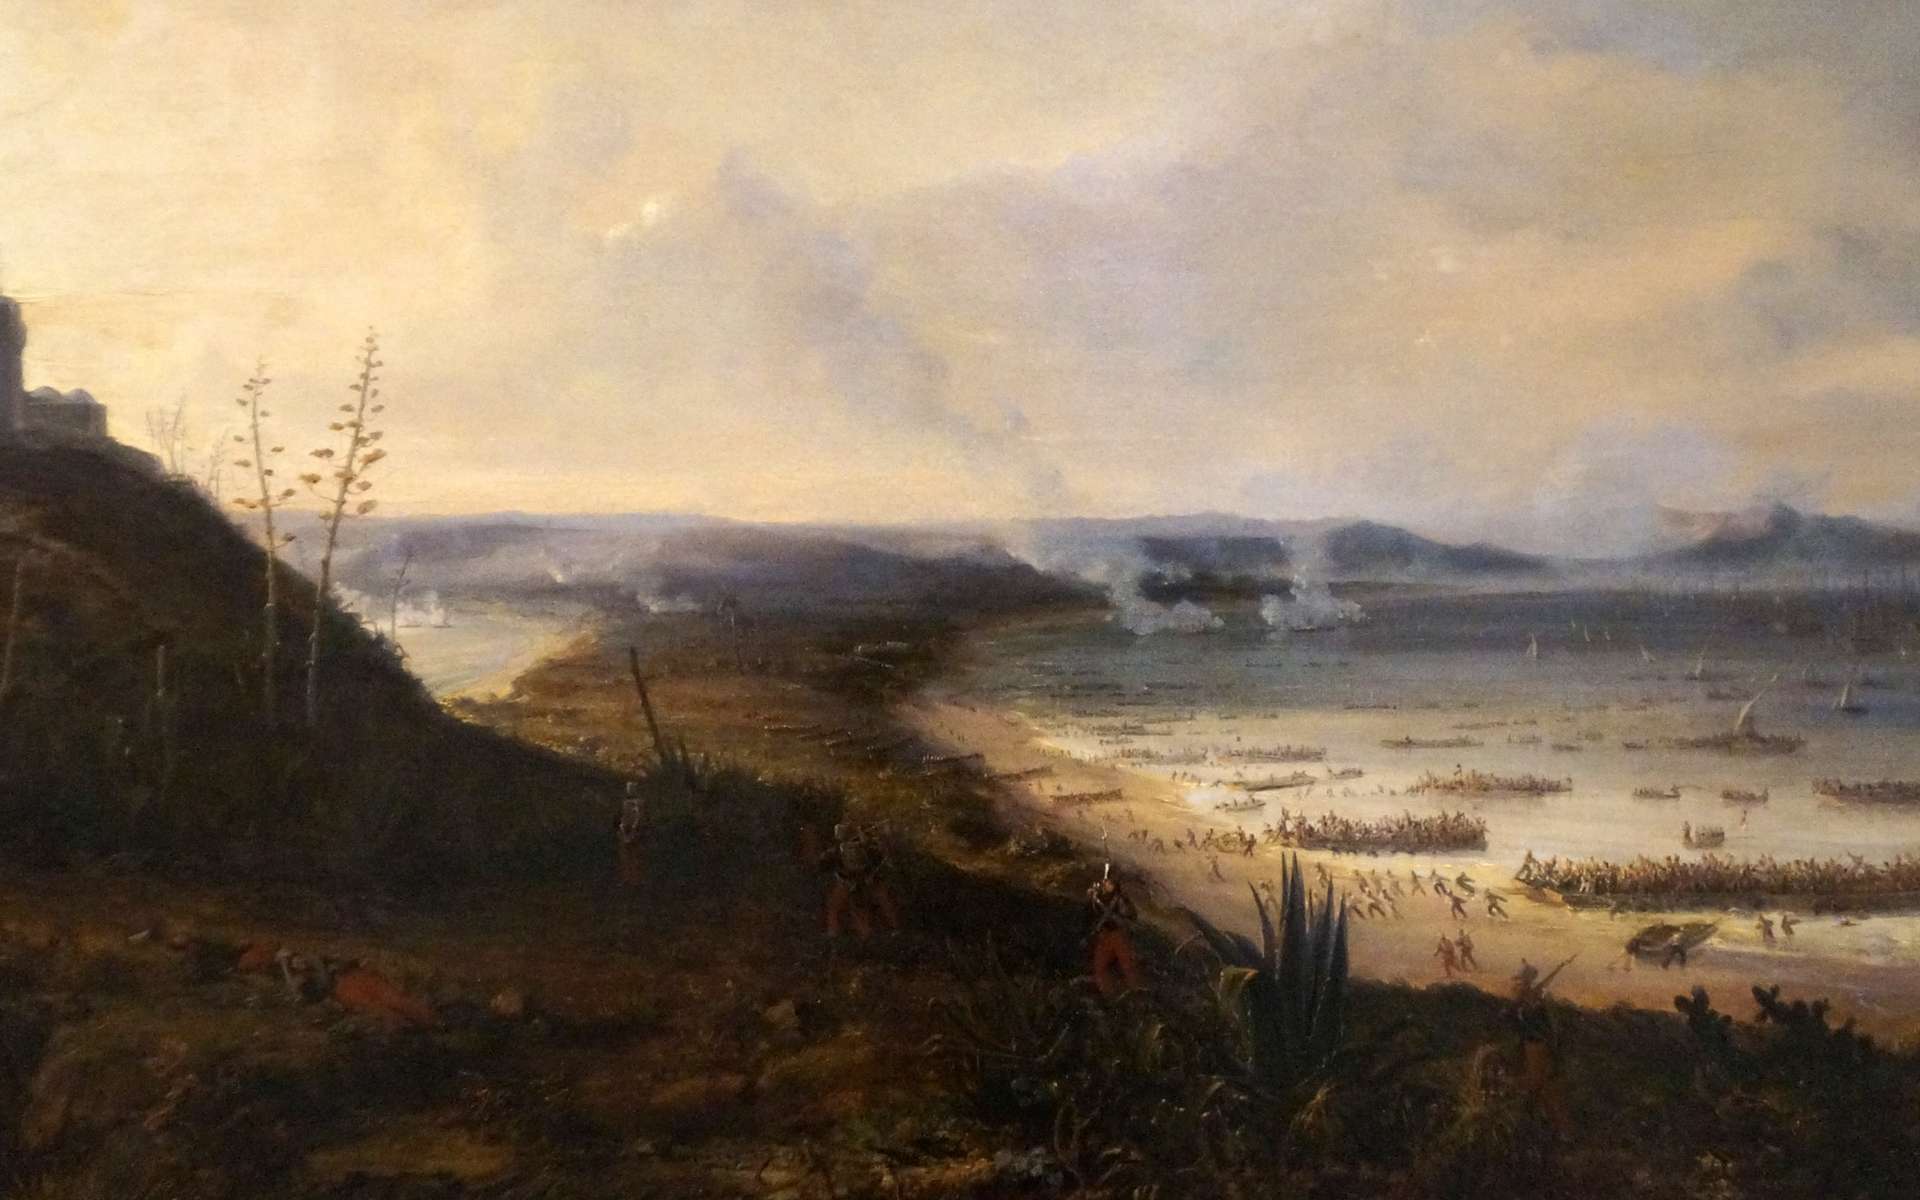 Débarquement de l'armée française près d'Alger, plage de Sidi Ferruch, 14 juin 1830 ; par Pierre Julien Gilbert, 1836. © Wikimedia Commons, domaine public.